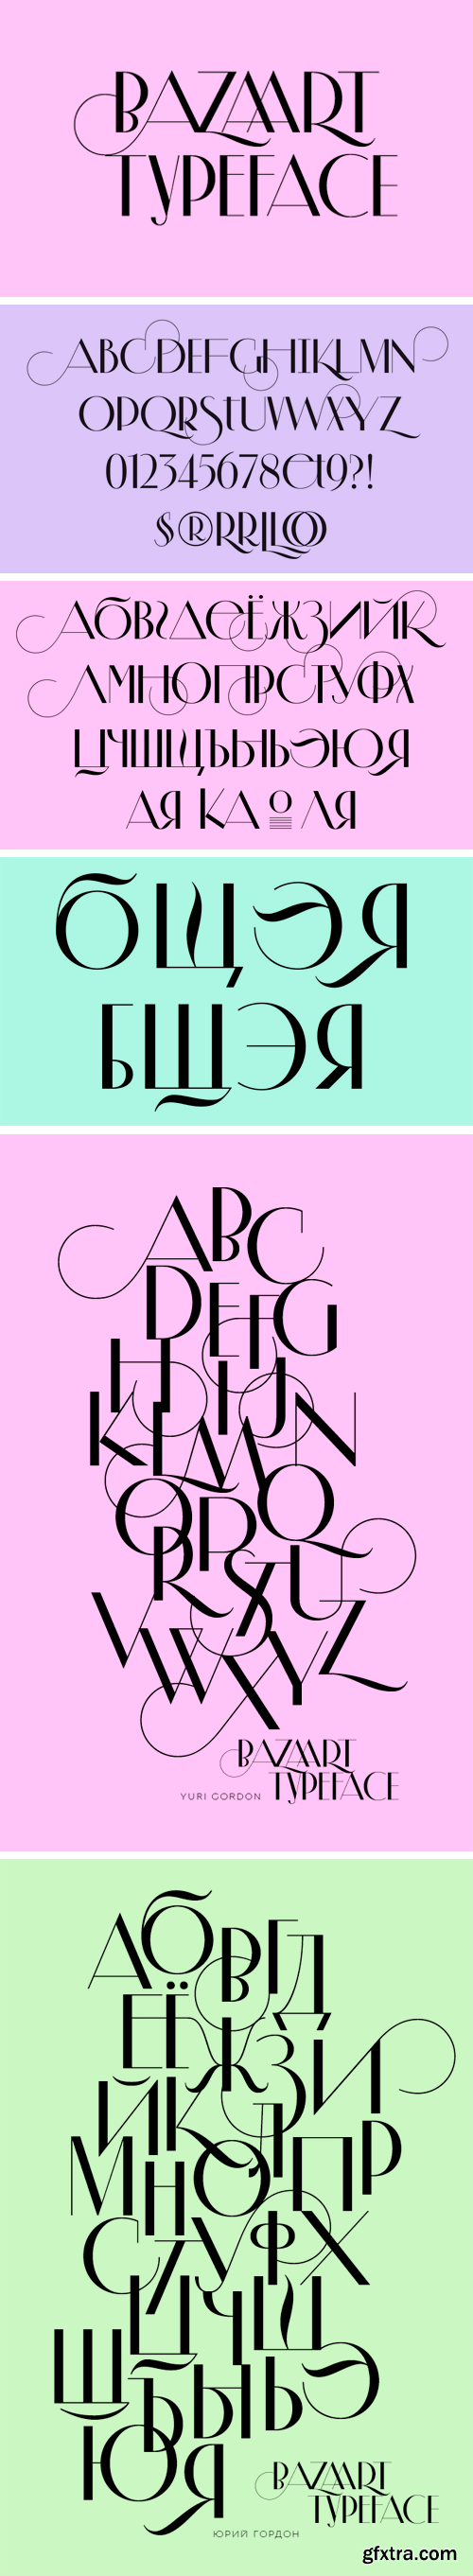 BazaArt Typeface